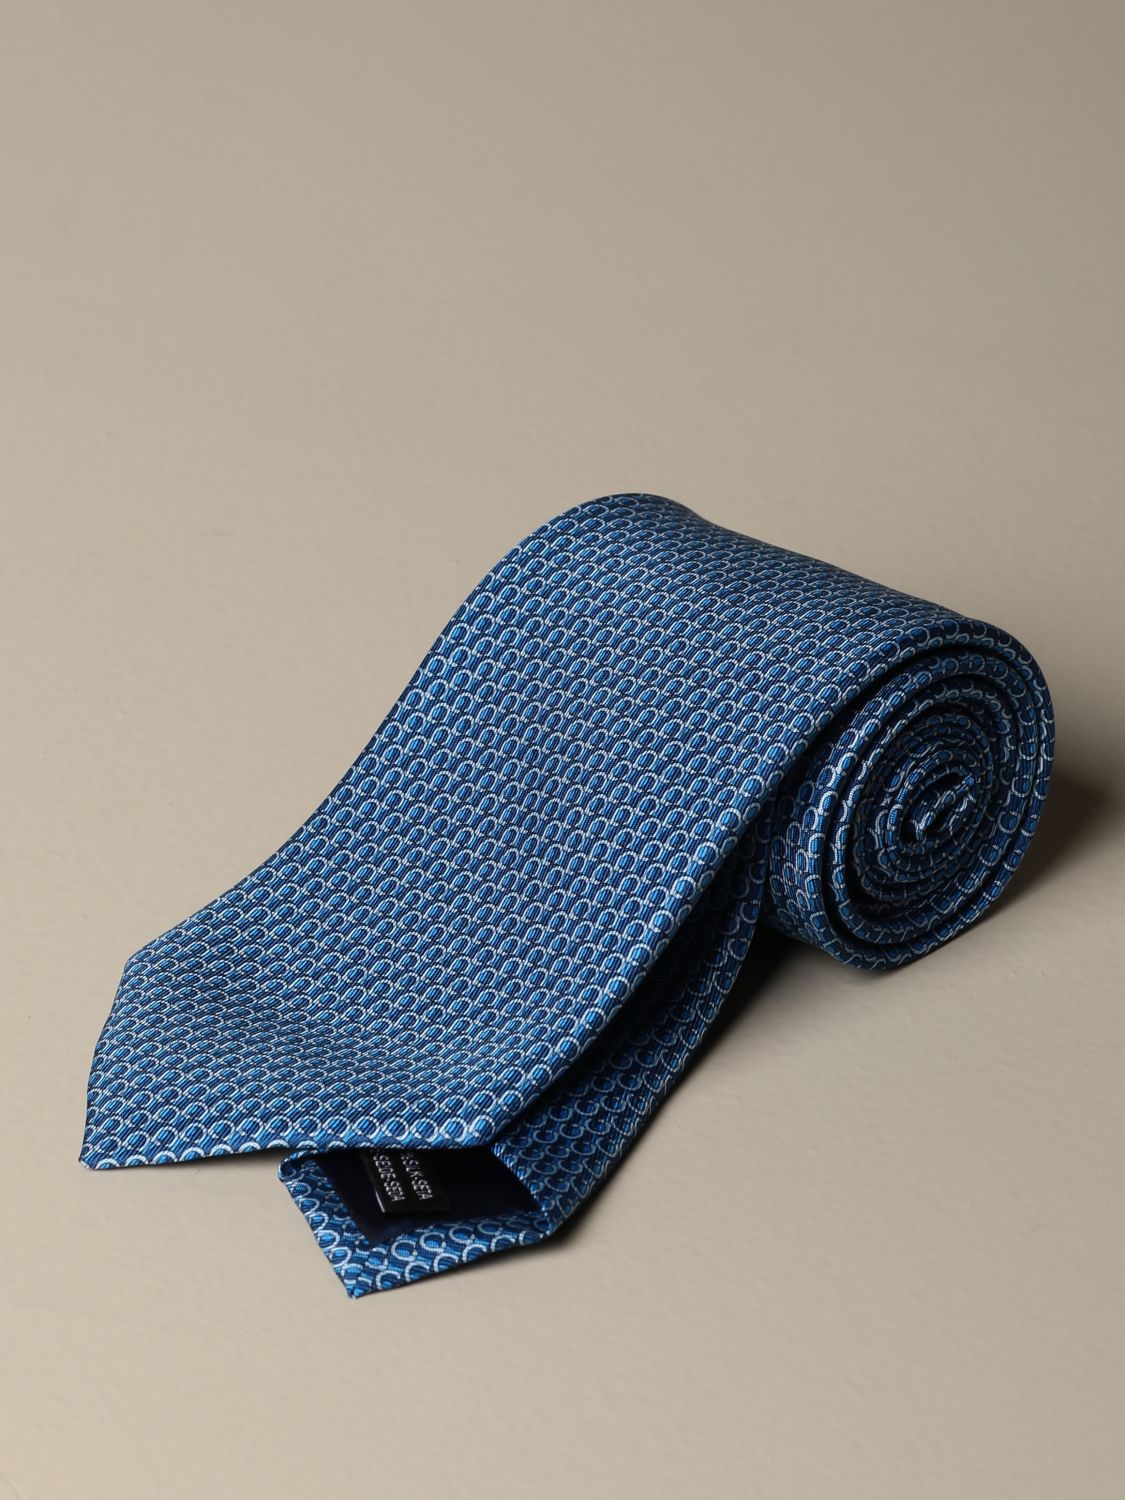 FERRAGAMO: silk tie with Gancini pattern - Gnawed Blue | Ferragamo tie ...